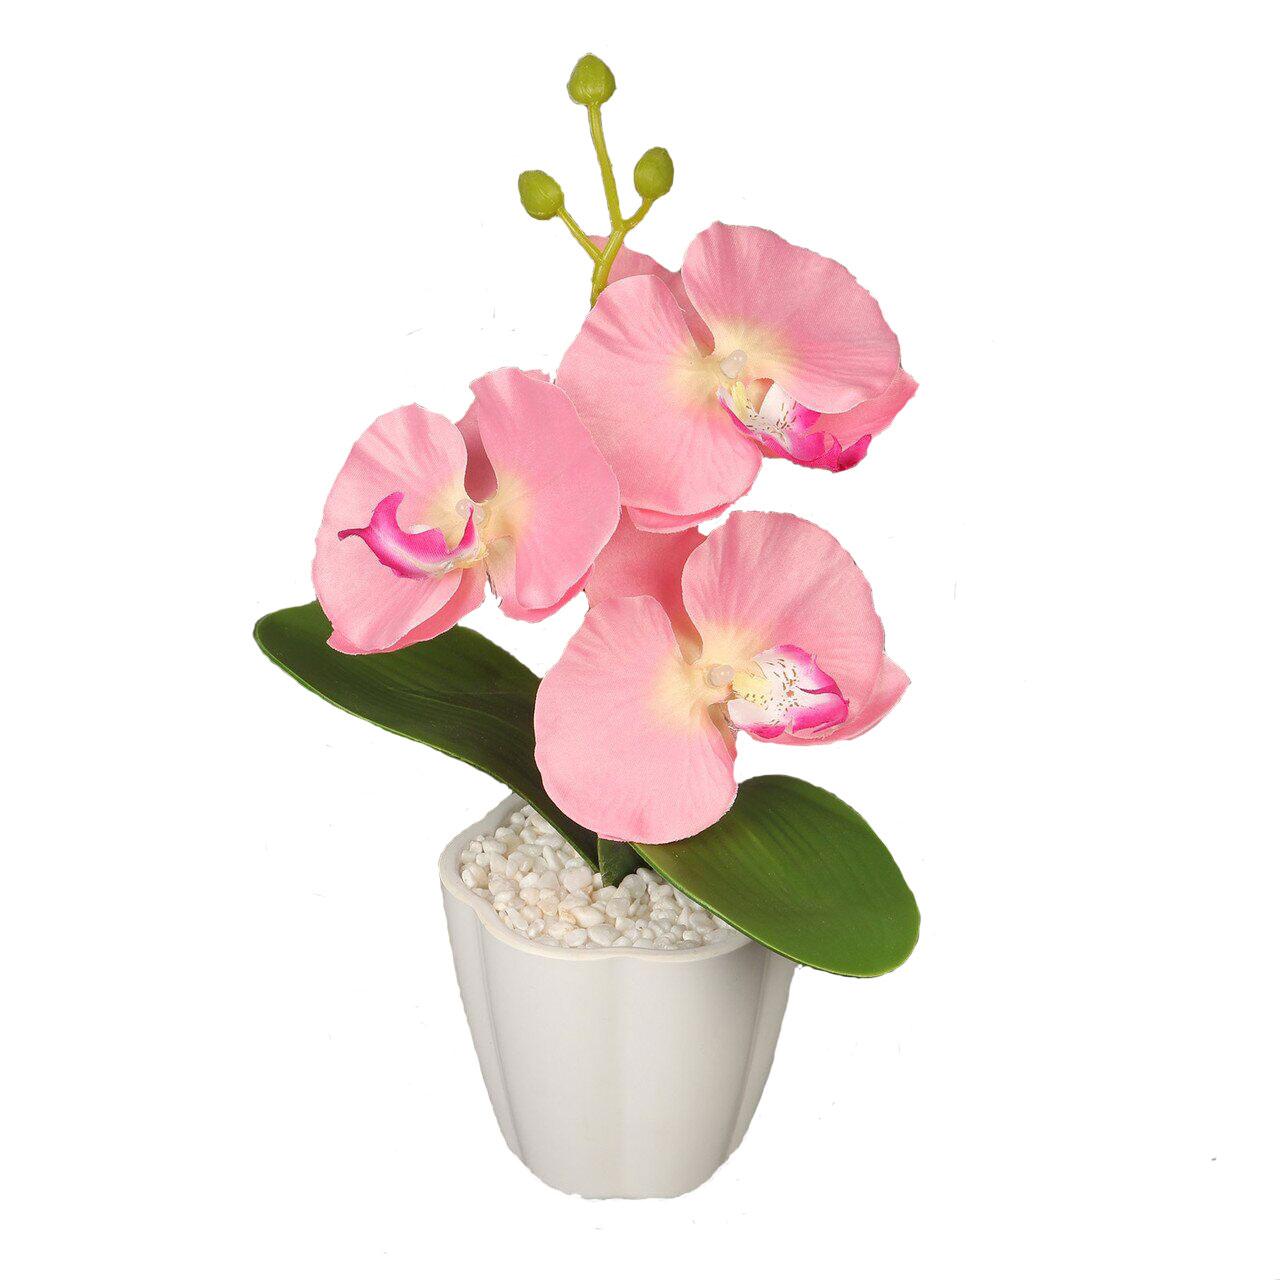 Декоративная композиция-вазон Орхидеи - Оплата Kaspi Pay